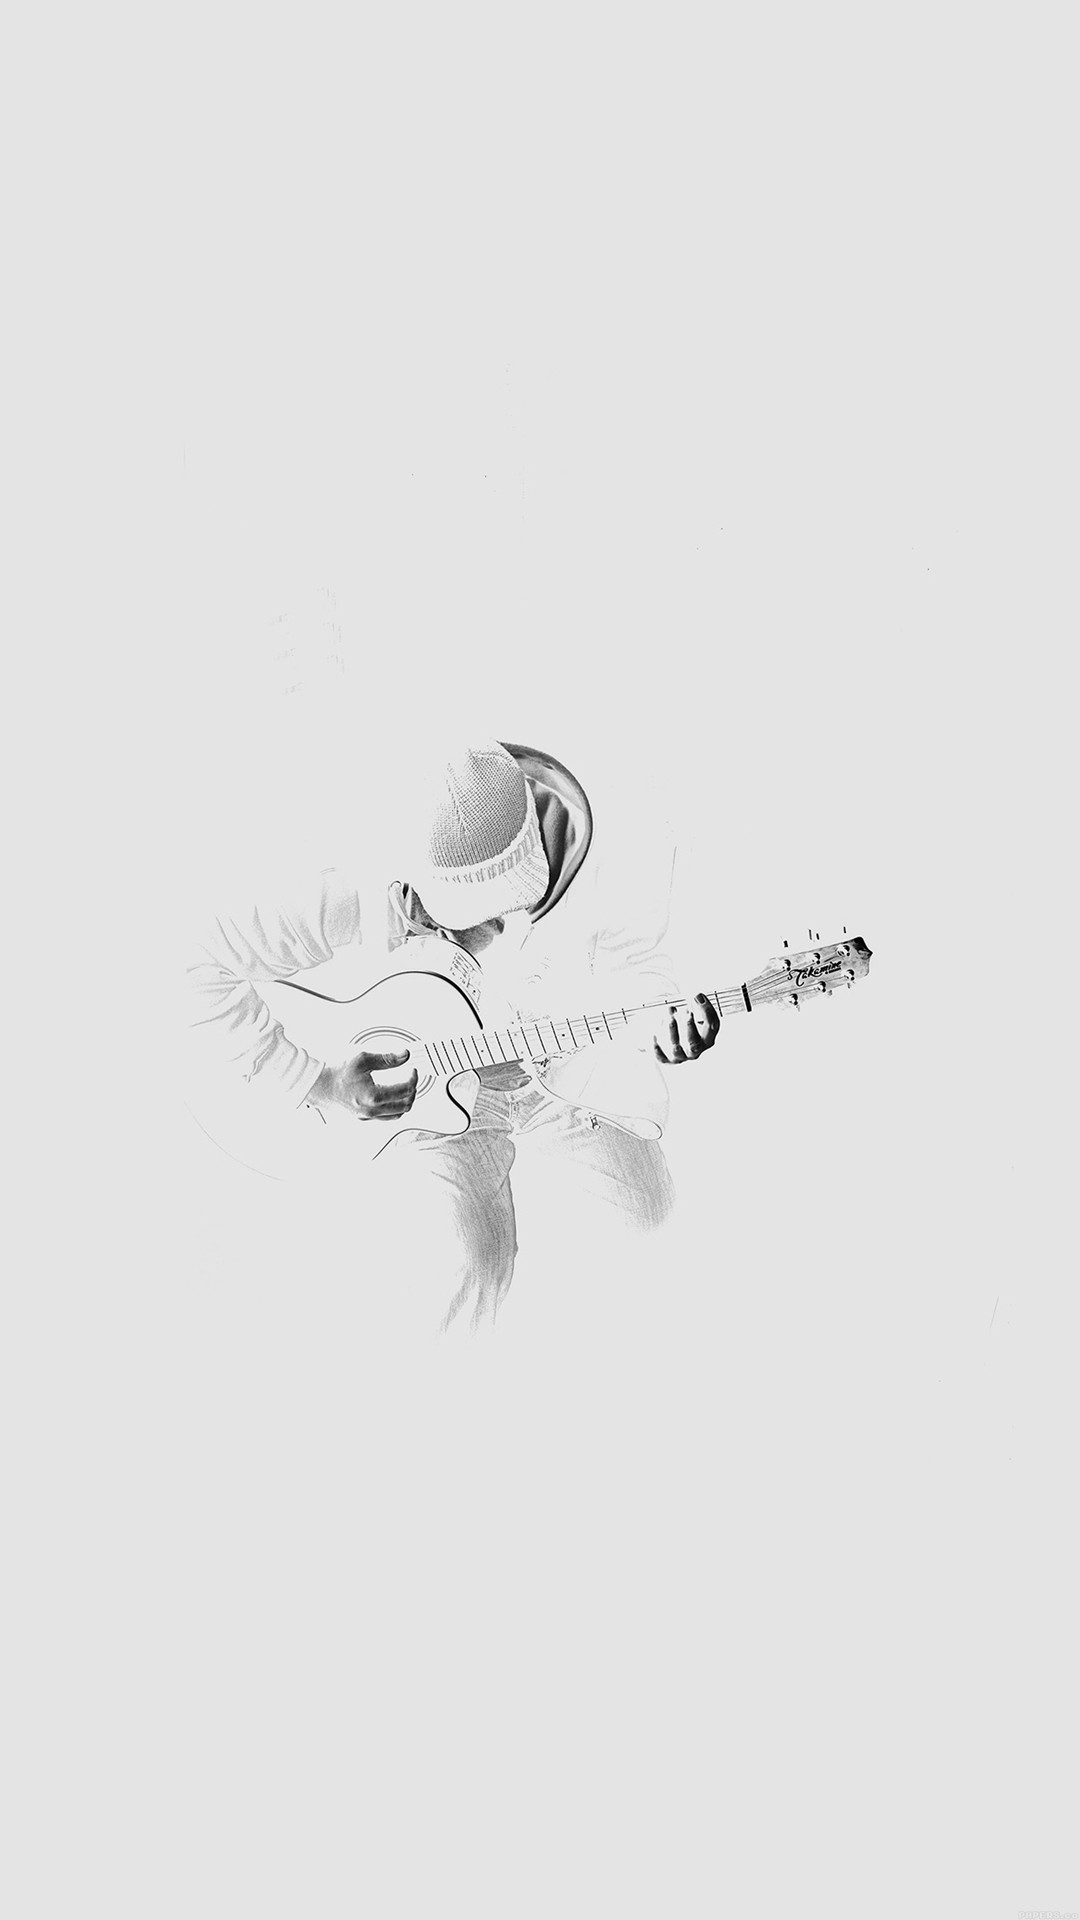 1080x1920 Aus den dunklen Guitar Player Musik weiÃ iPhone 8 Plus Wallpaper